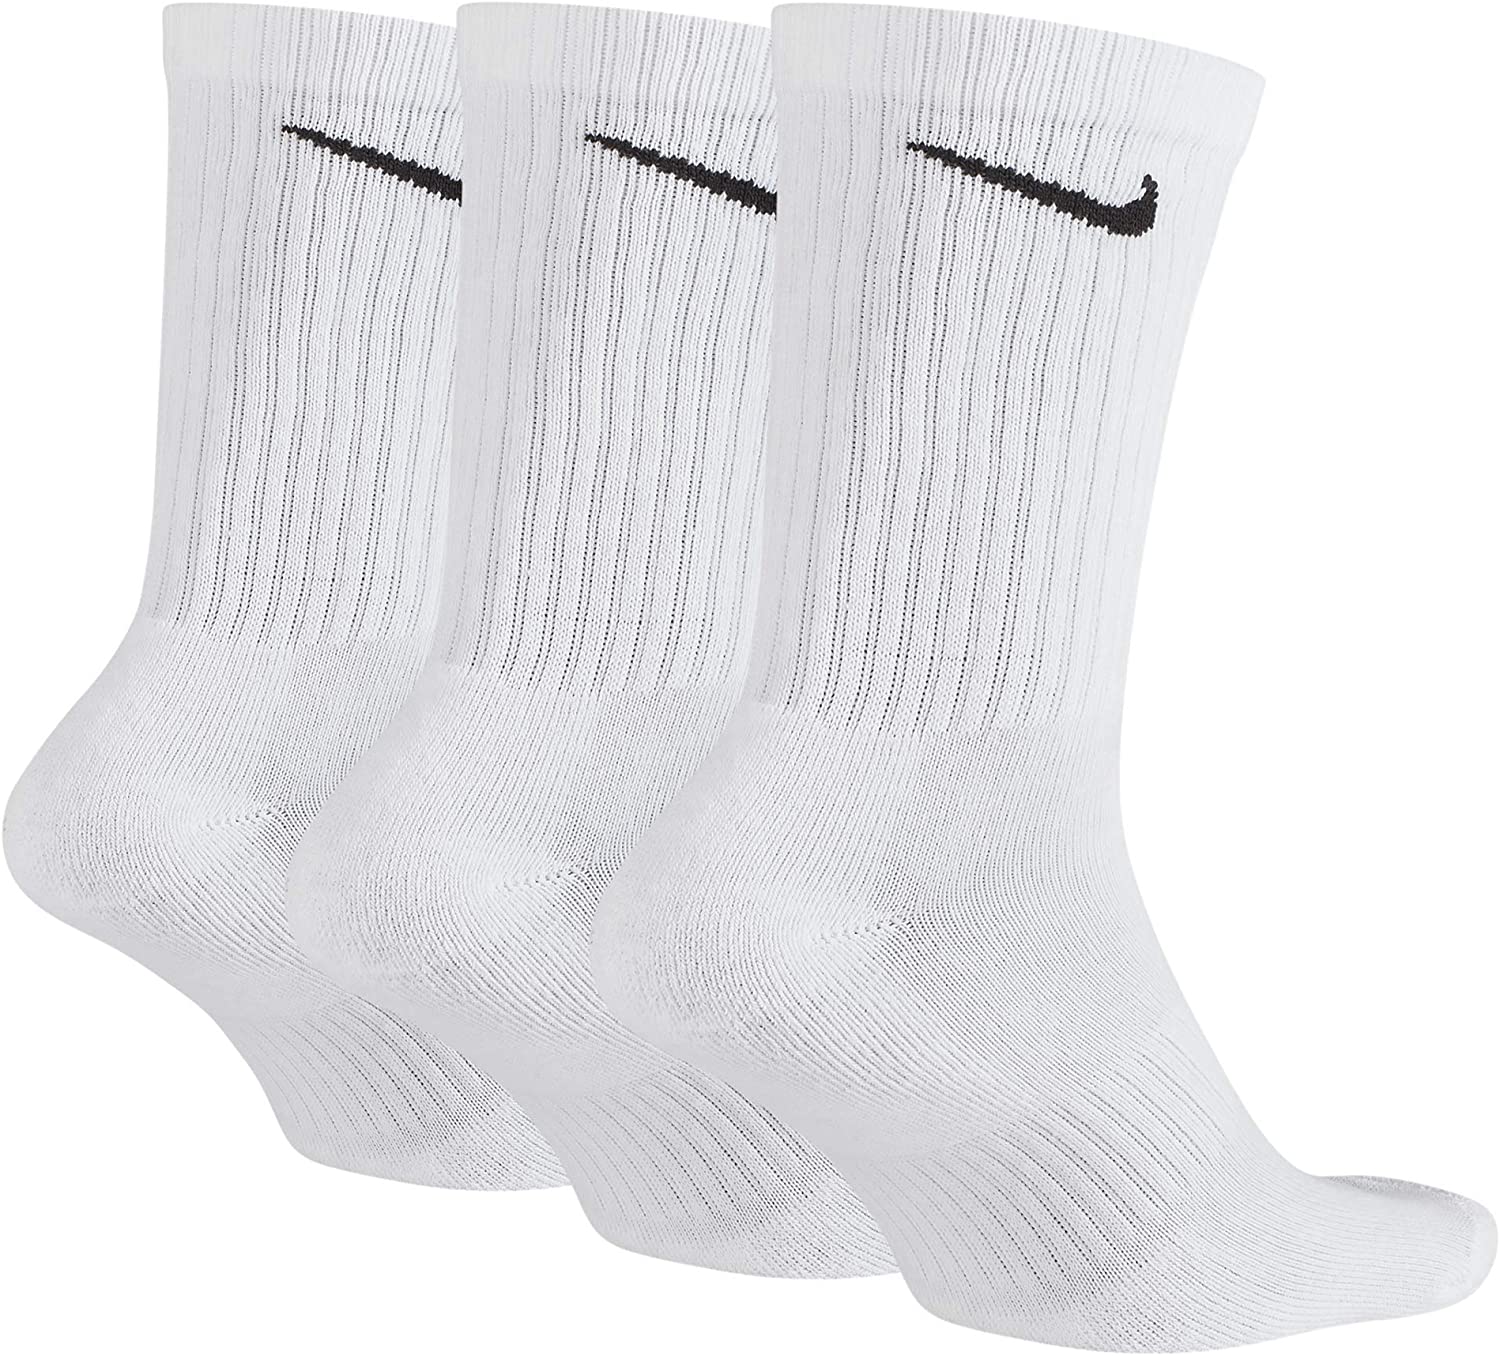 Nike Unisex Men's Women's Cotton Cushion Crew Socks 3-Pack - White